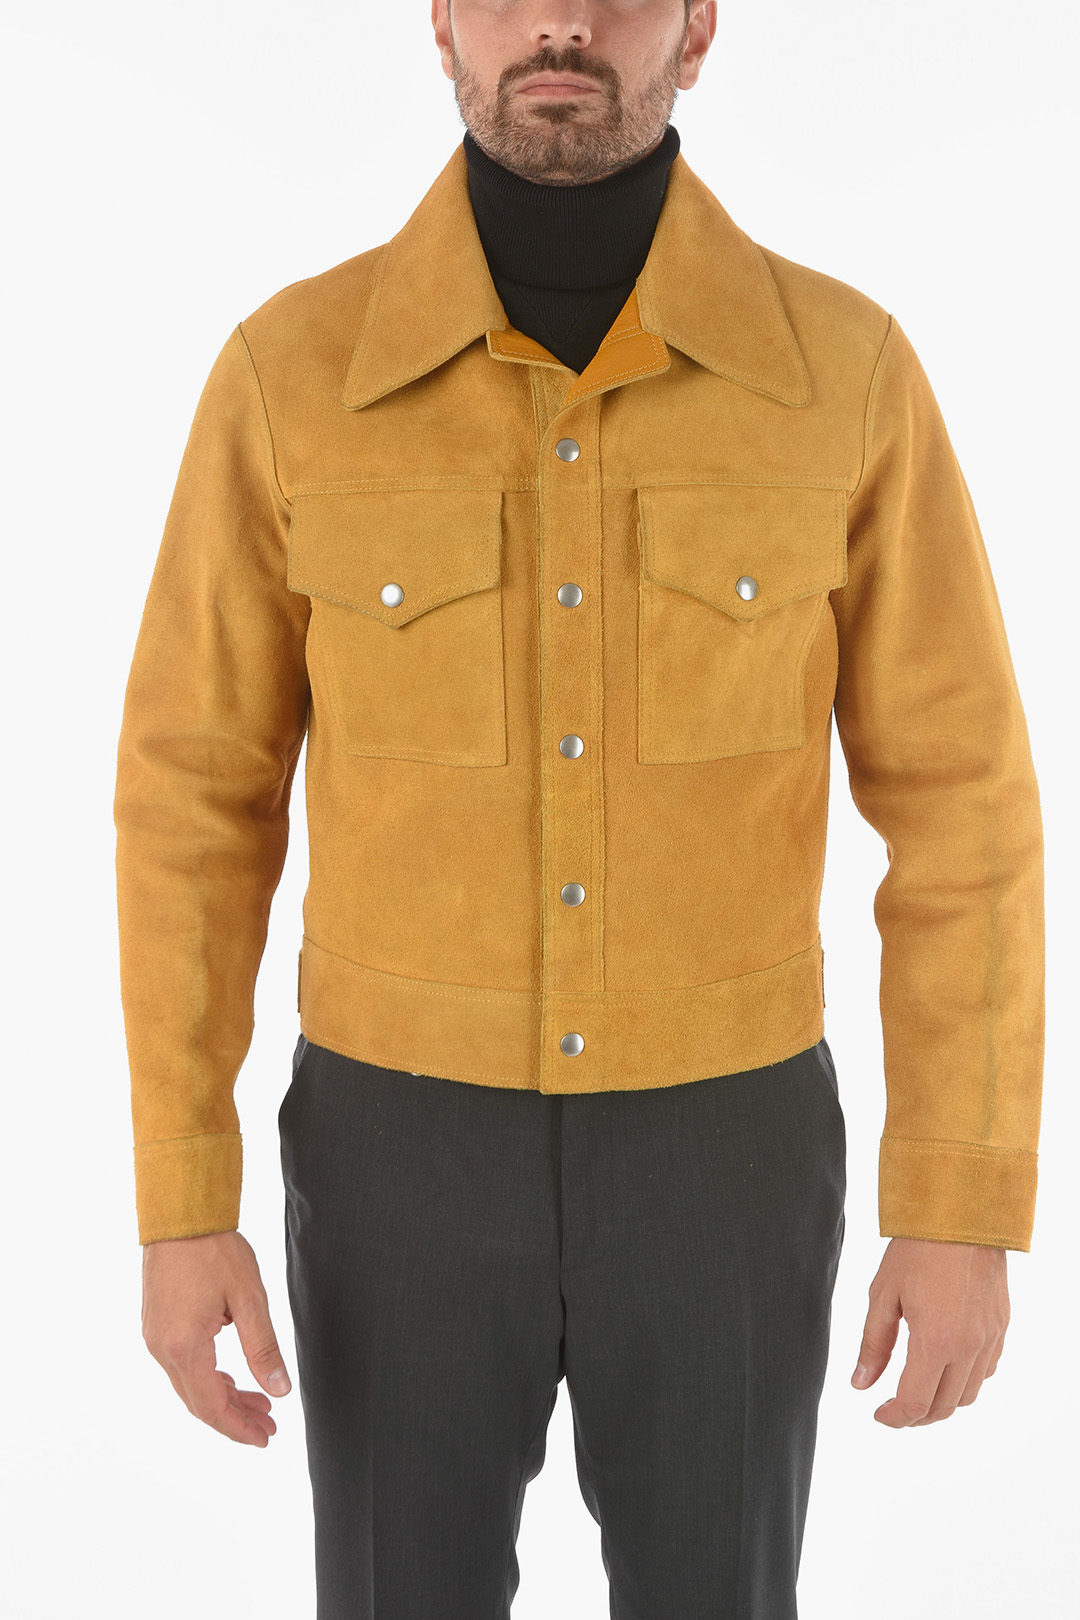 Maison Margiela Reversible Leather Jacket men - Glamood Outlet